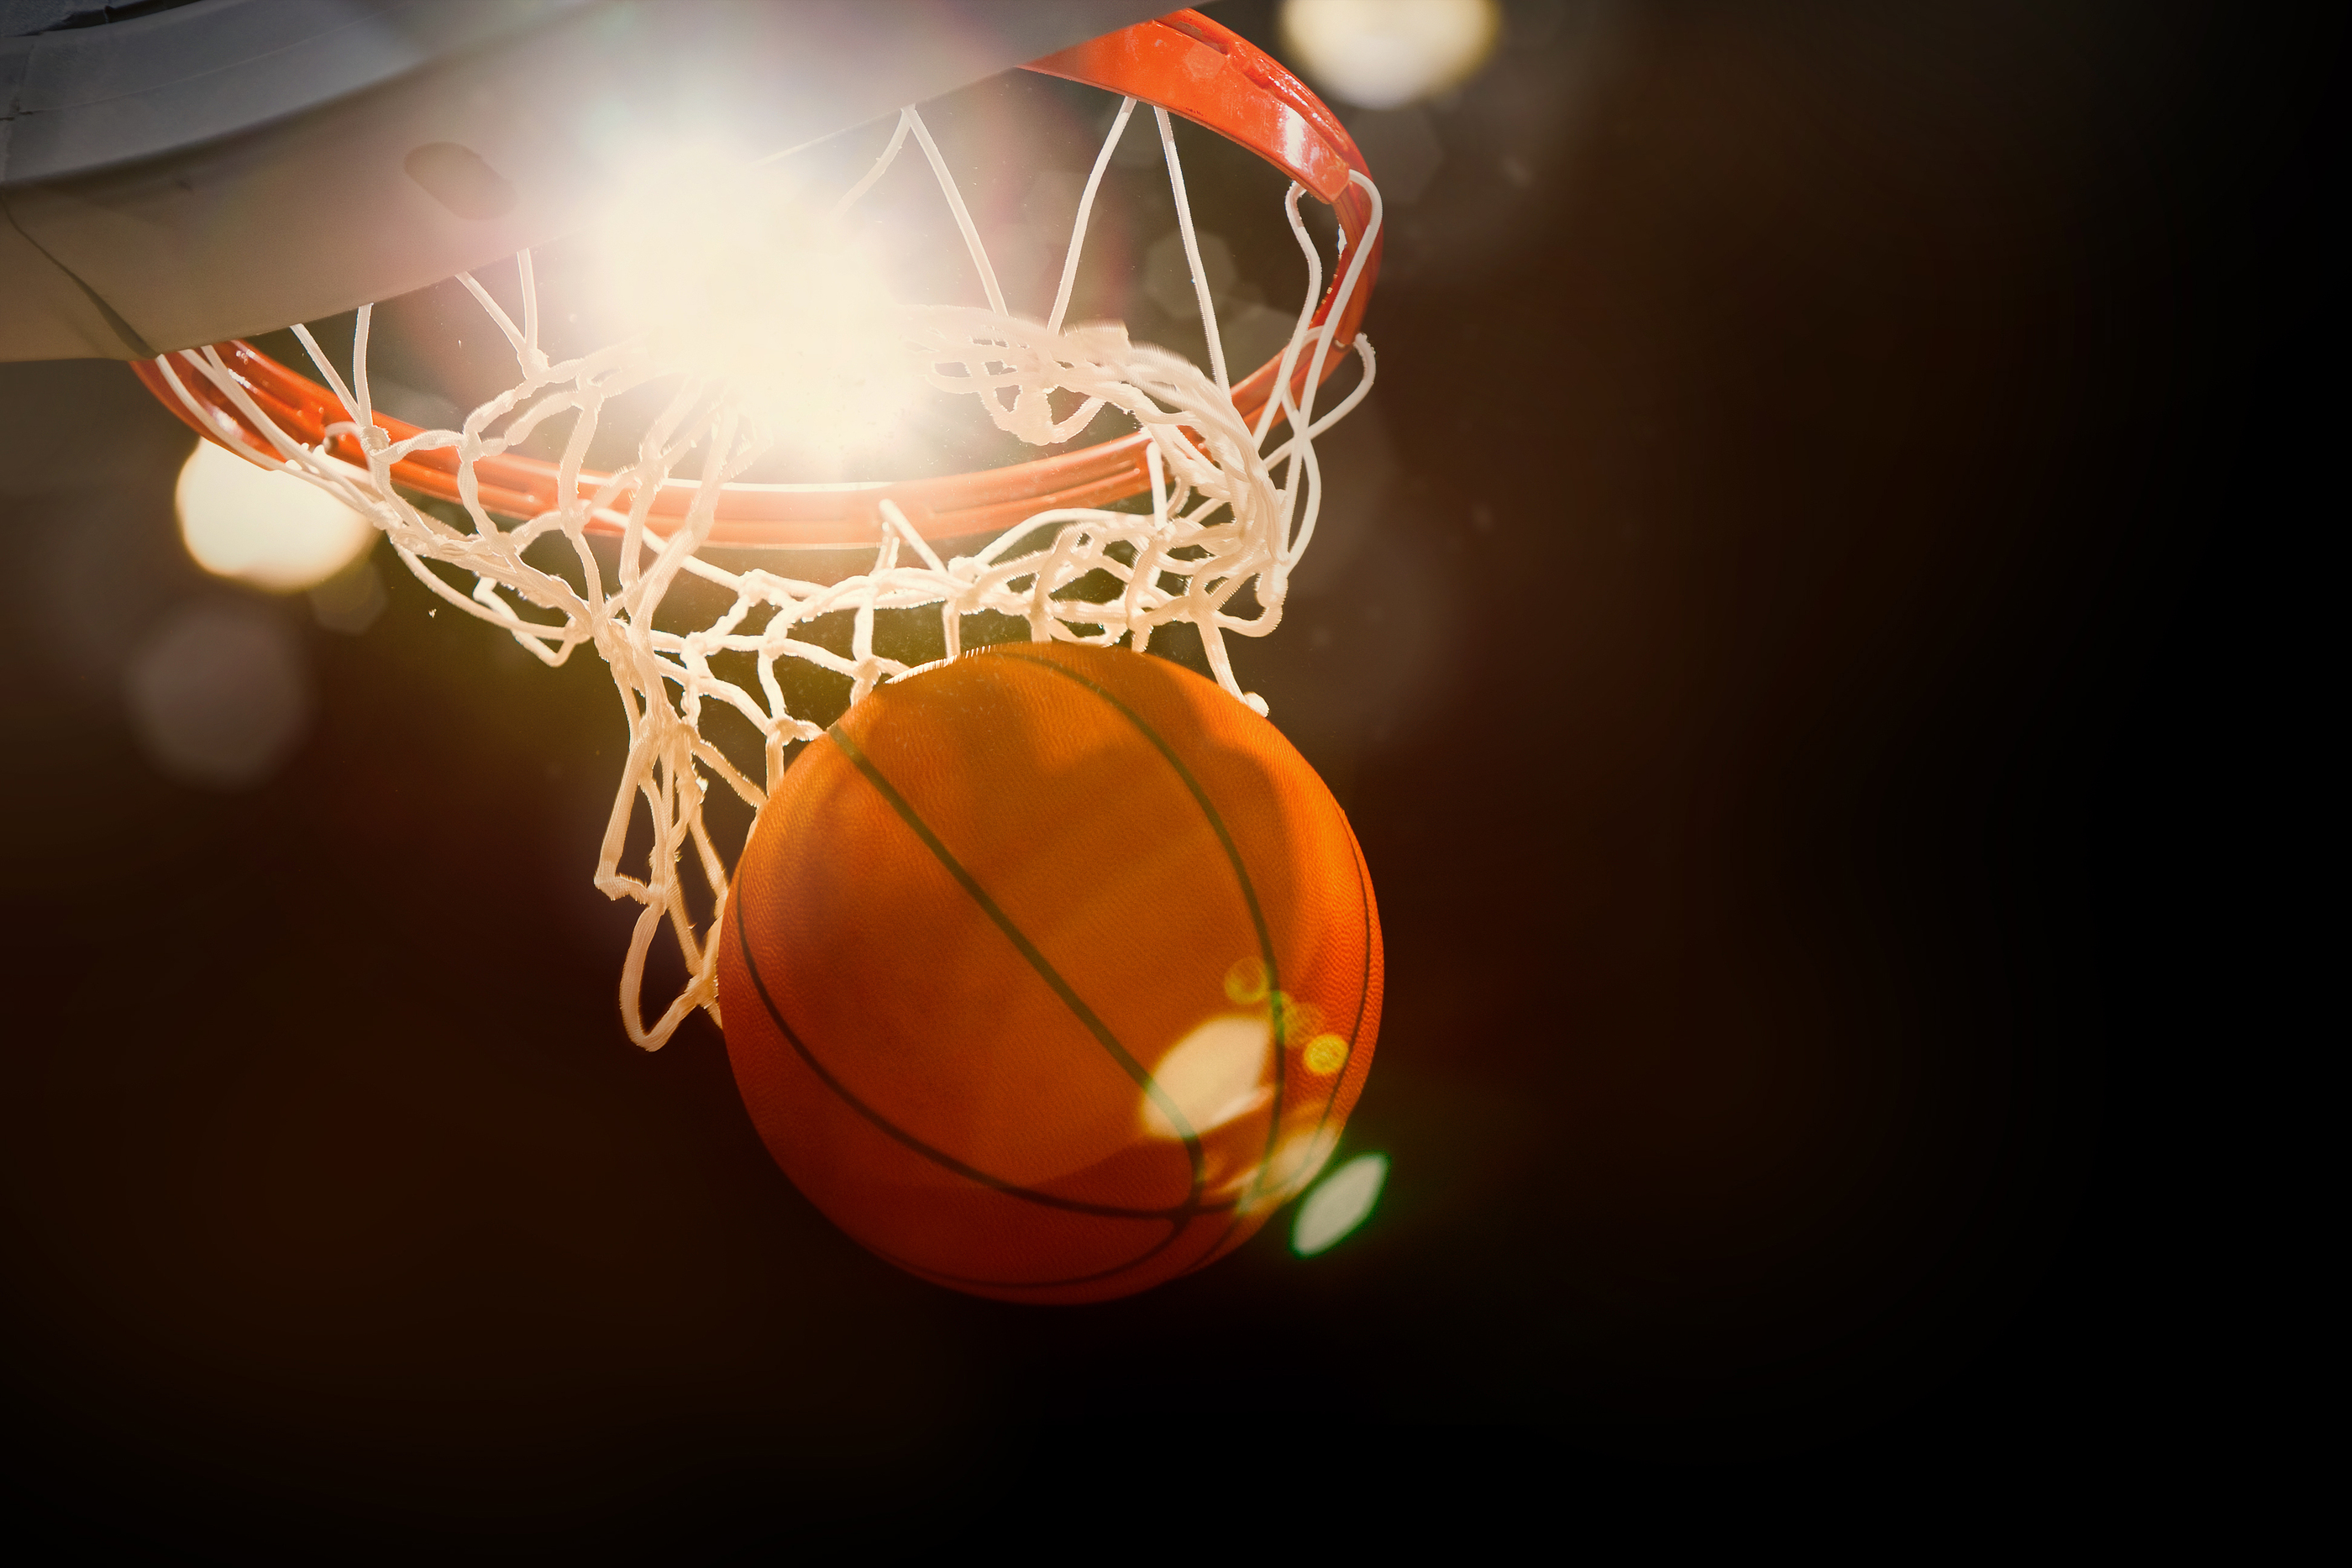 TOBB ETÜ Erkek Basketbol Takımımız TÜSF Basketbol 2. Lig Turnuvasını Namağlup Şampiyon Olarak Bitirdi